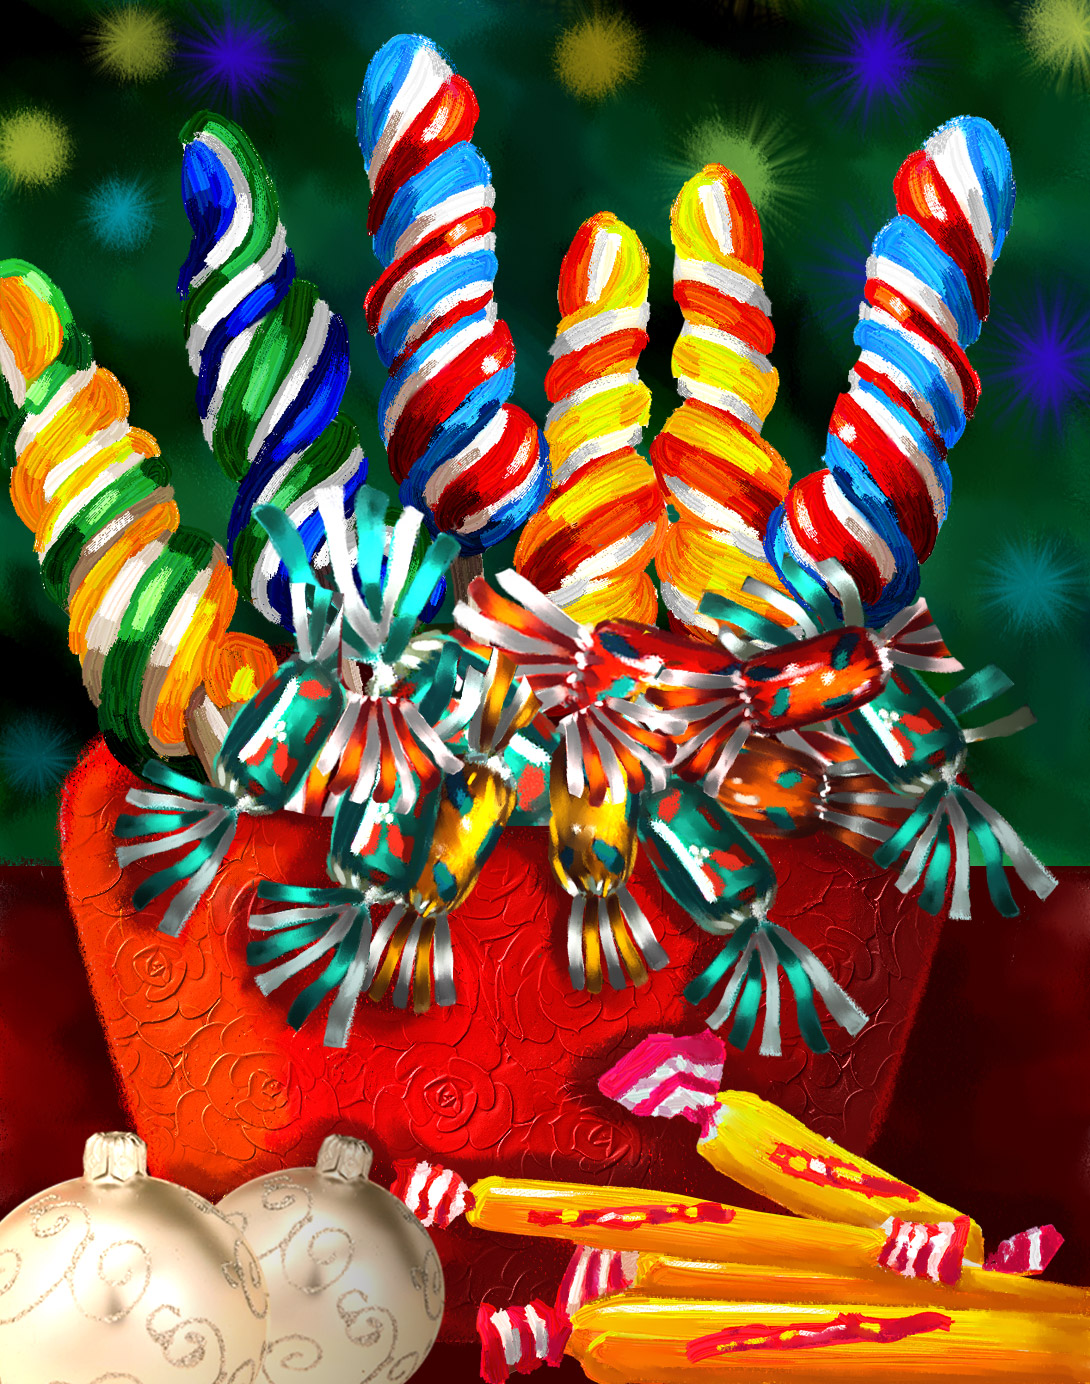 Illustrations culinaires - Assortiment - sucettes tortillon - papillotes - couleurs multiples - pot rouge - Dominique Evangelisti